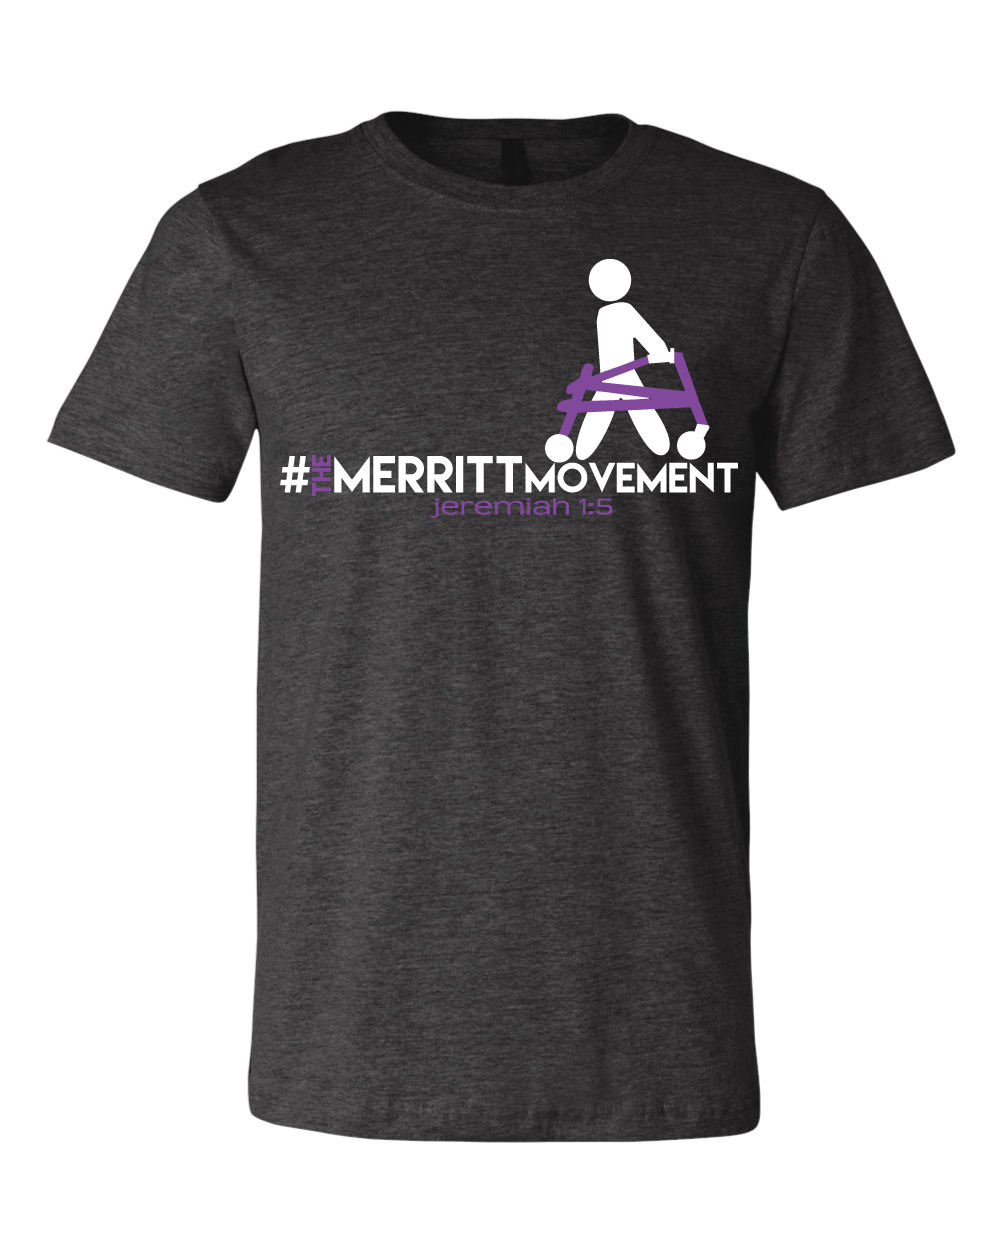 The Merritt Movement Official T-Shirt